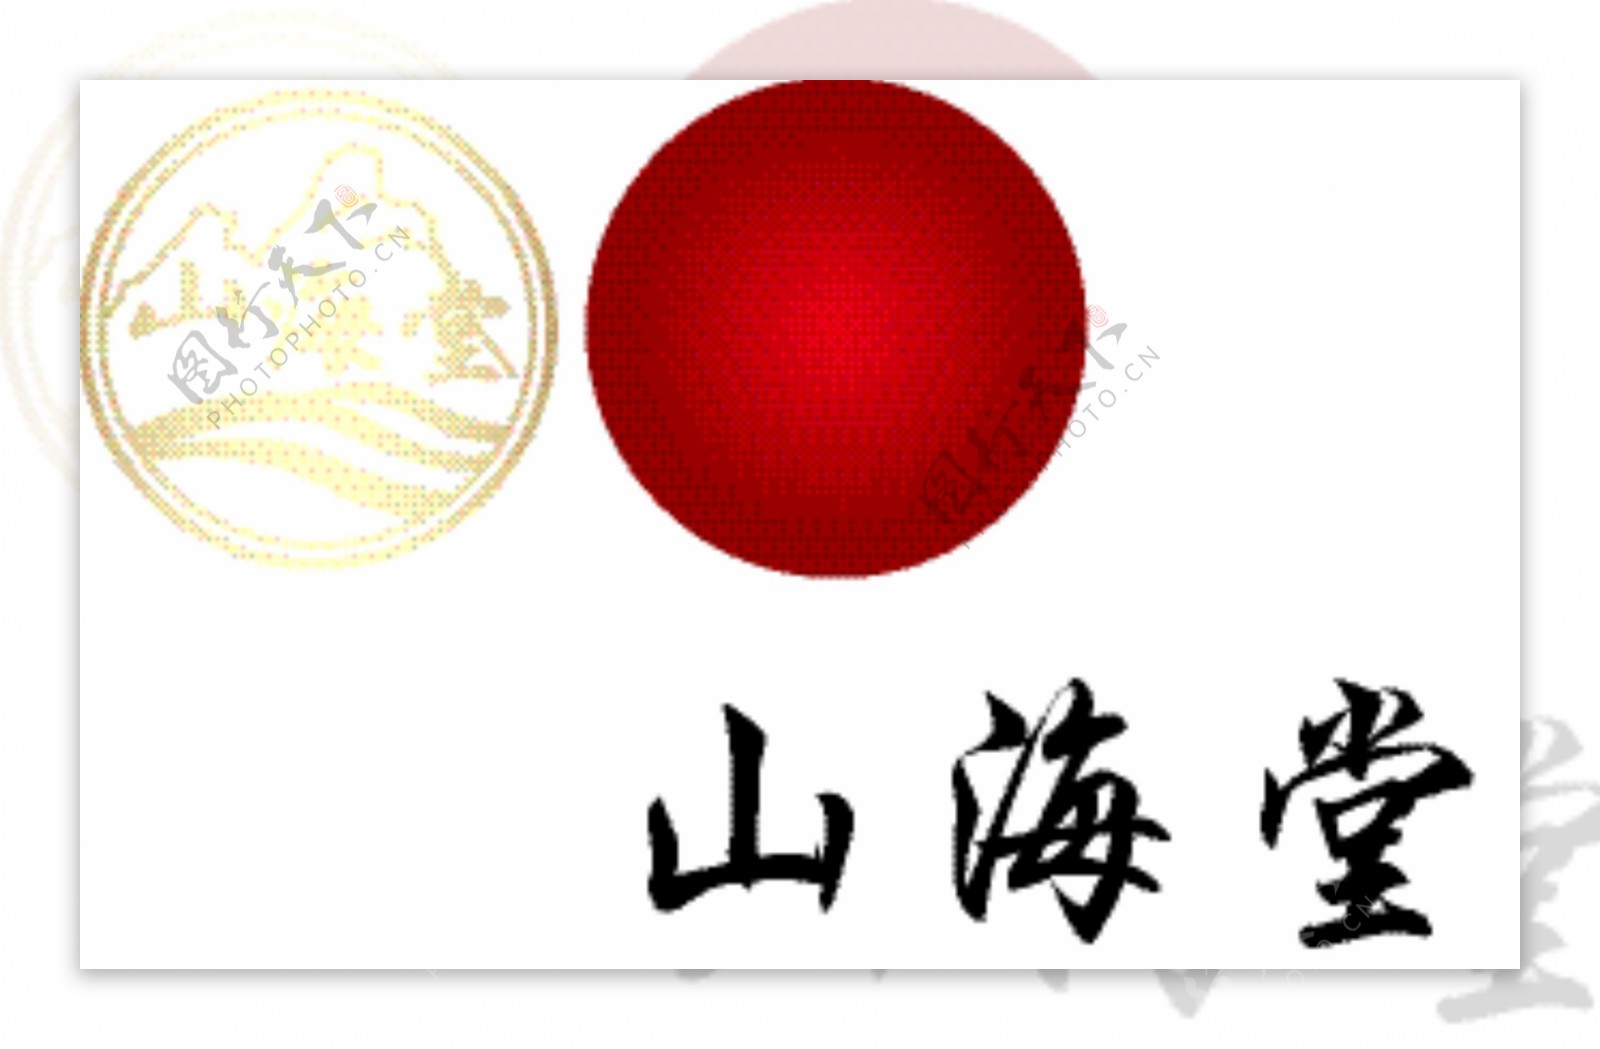 山海堂logo图片